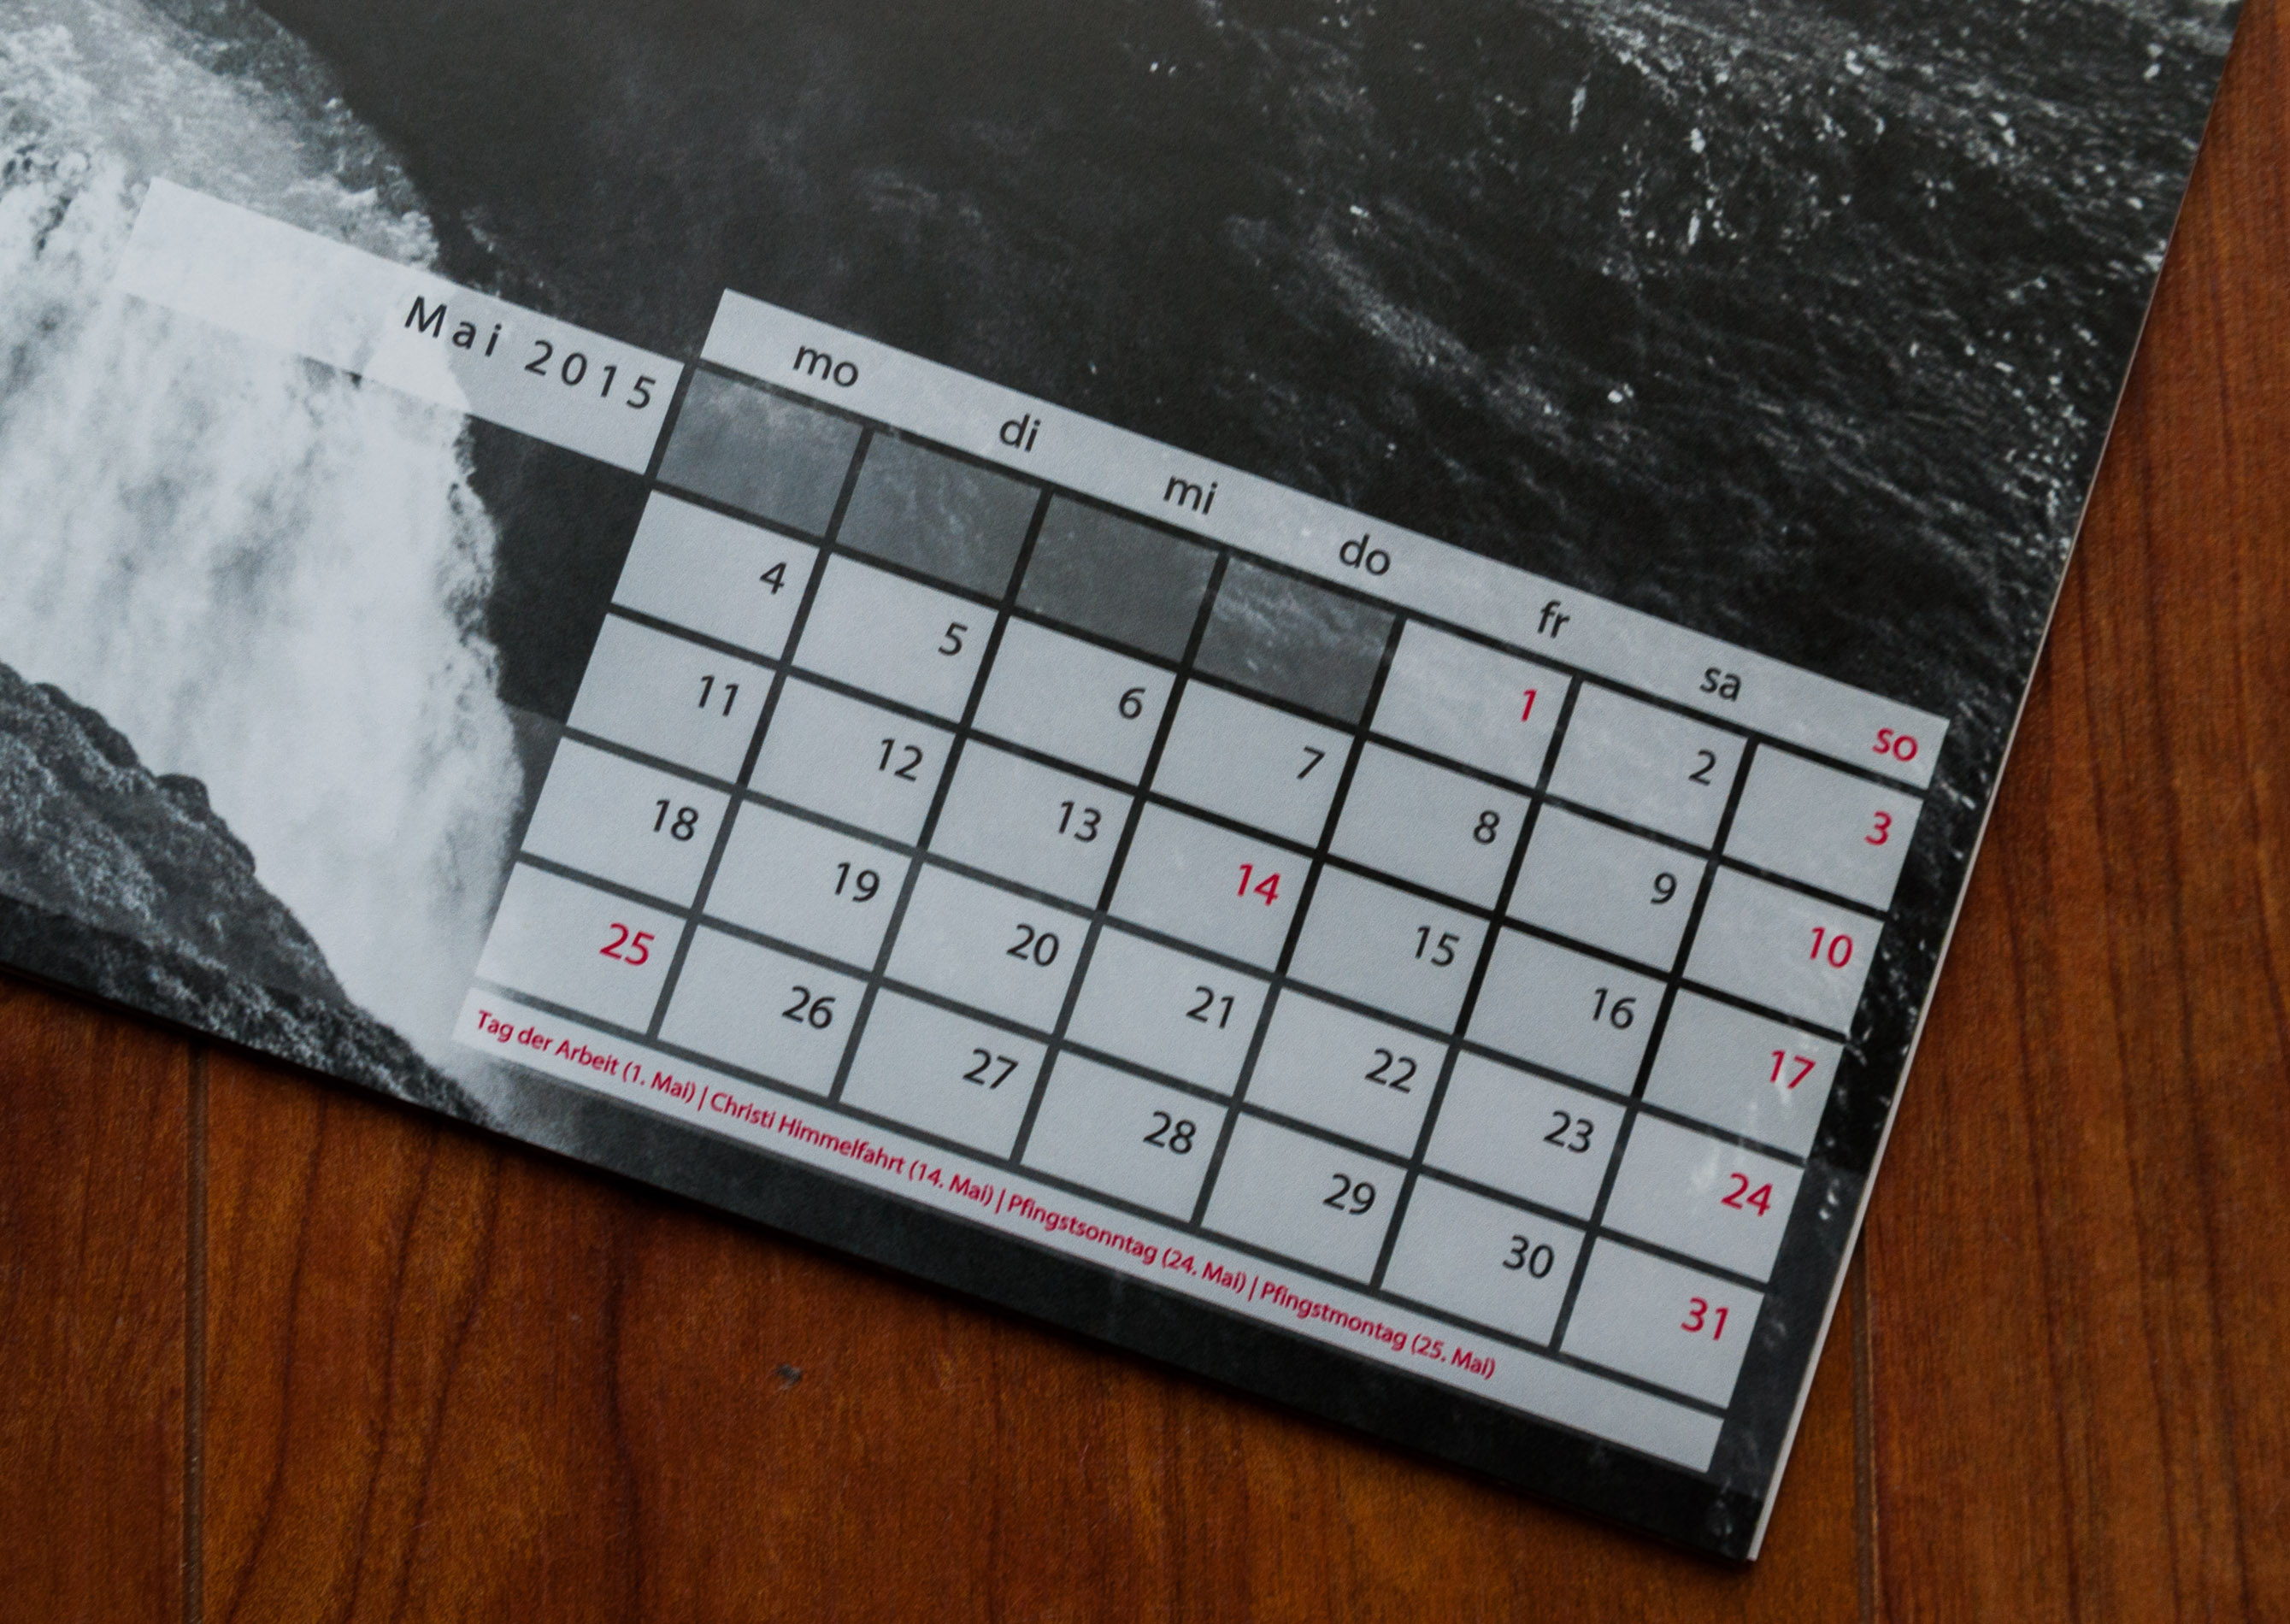 Kalendarium mit Feiertagen